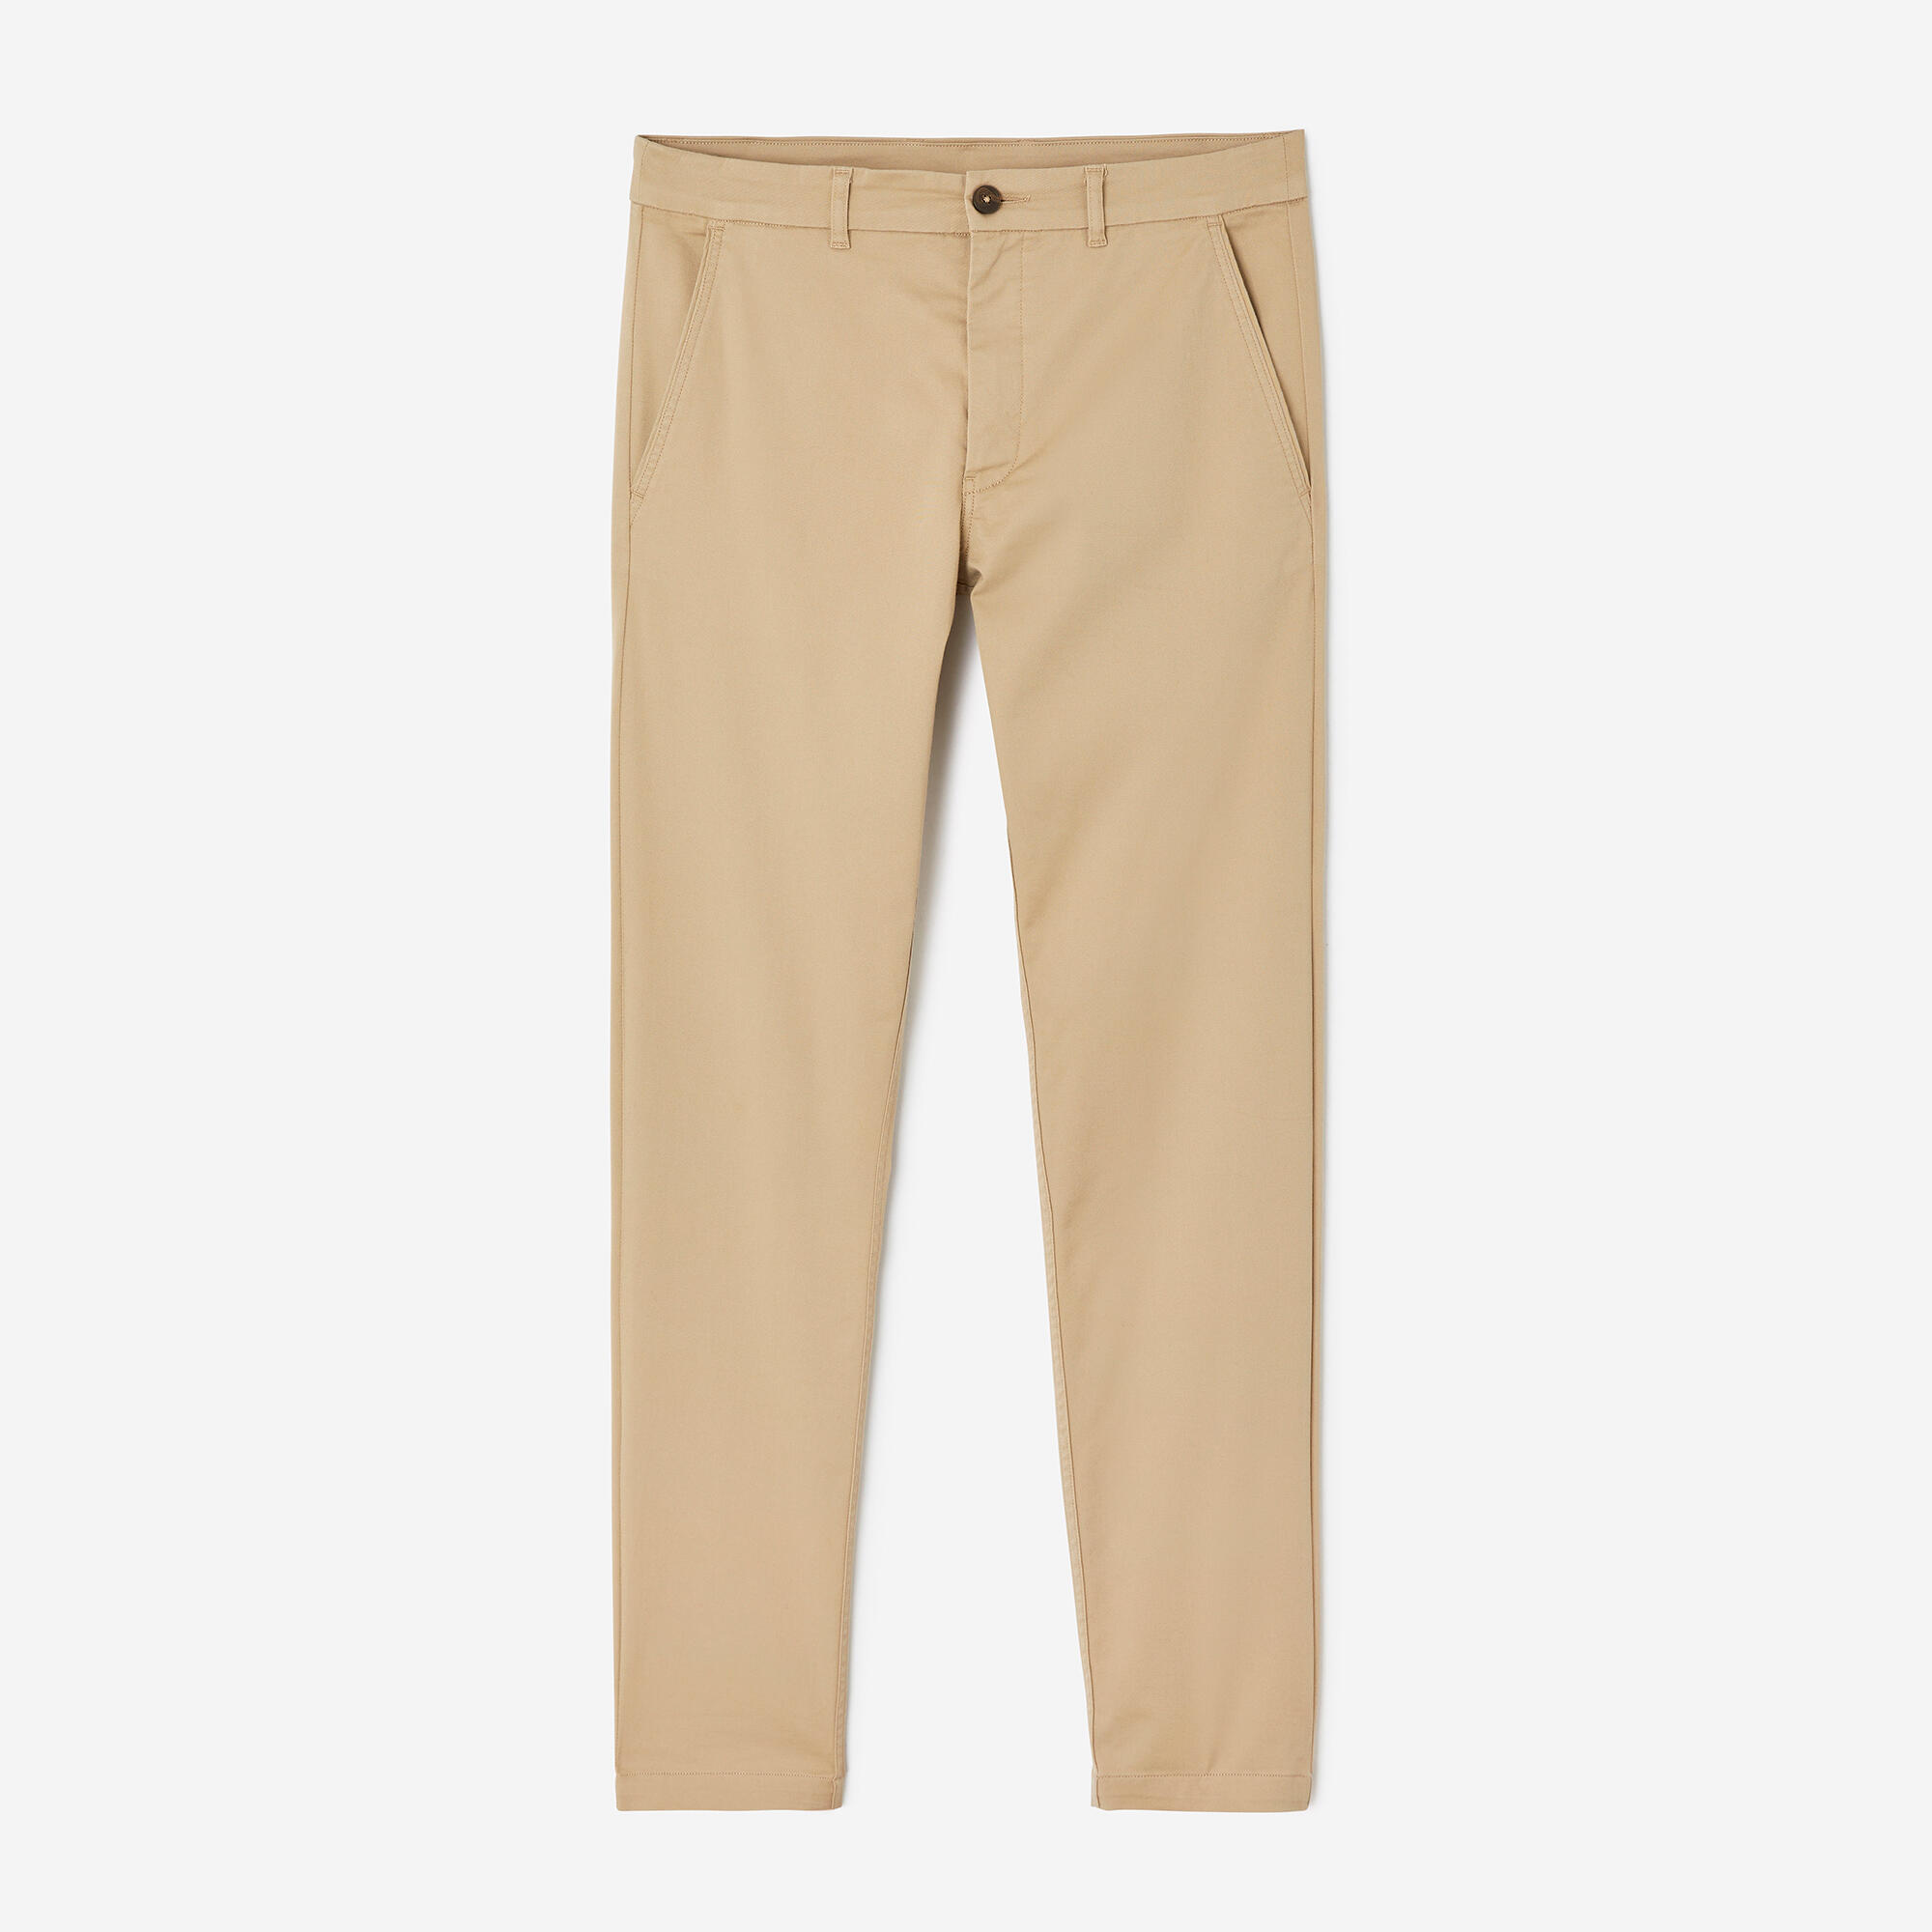 Levi's Khaki Cotton Regular Fit Trousers